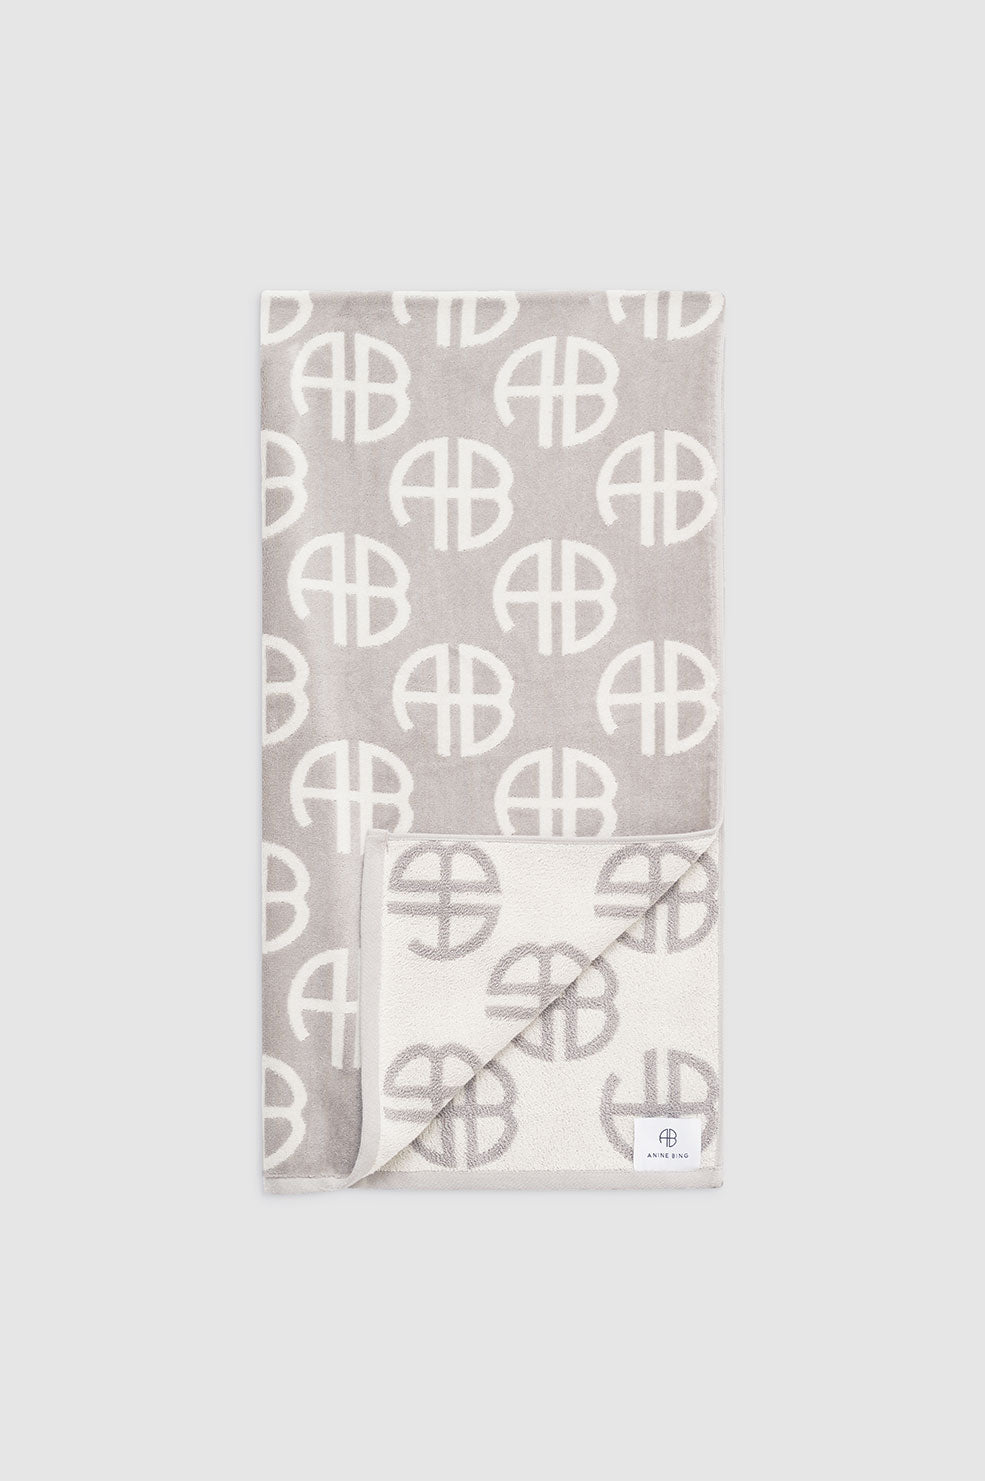 Louis Vuitton Beach Towel Blanket Monogram Black Color 100% Cotton